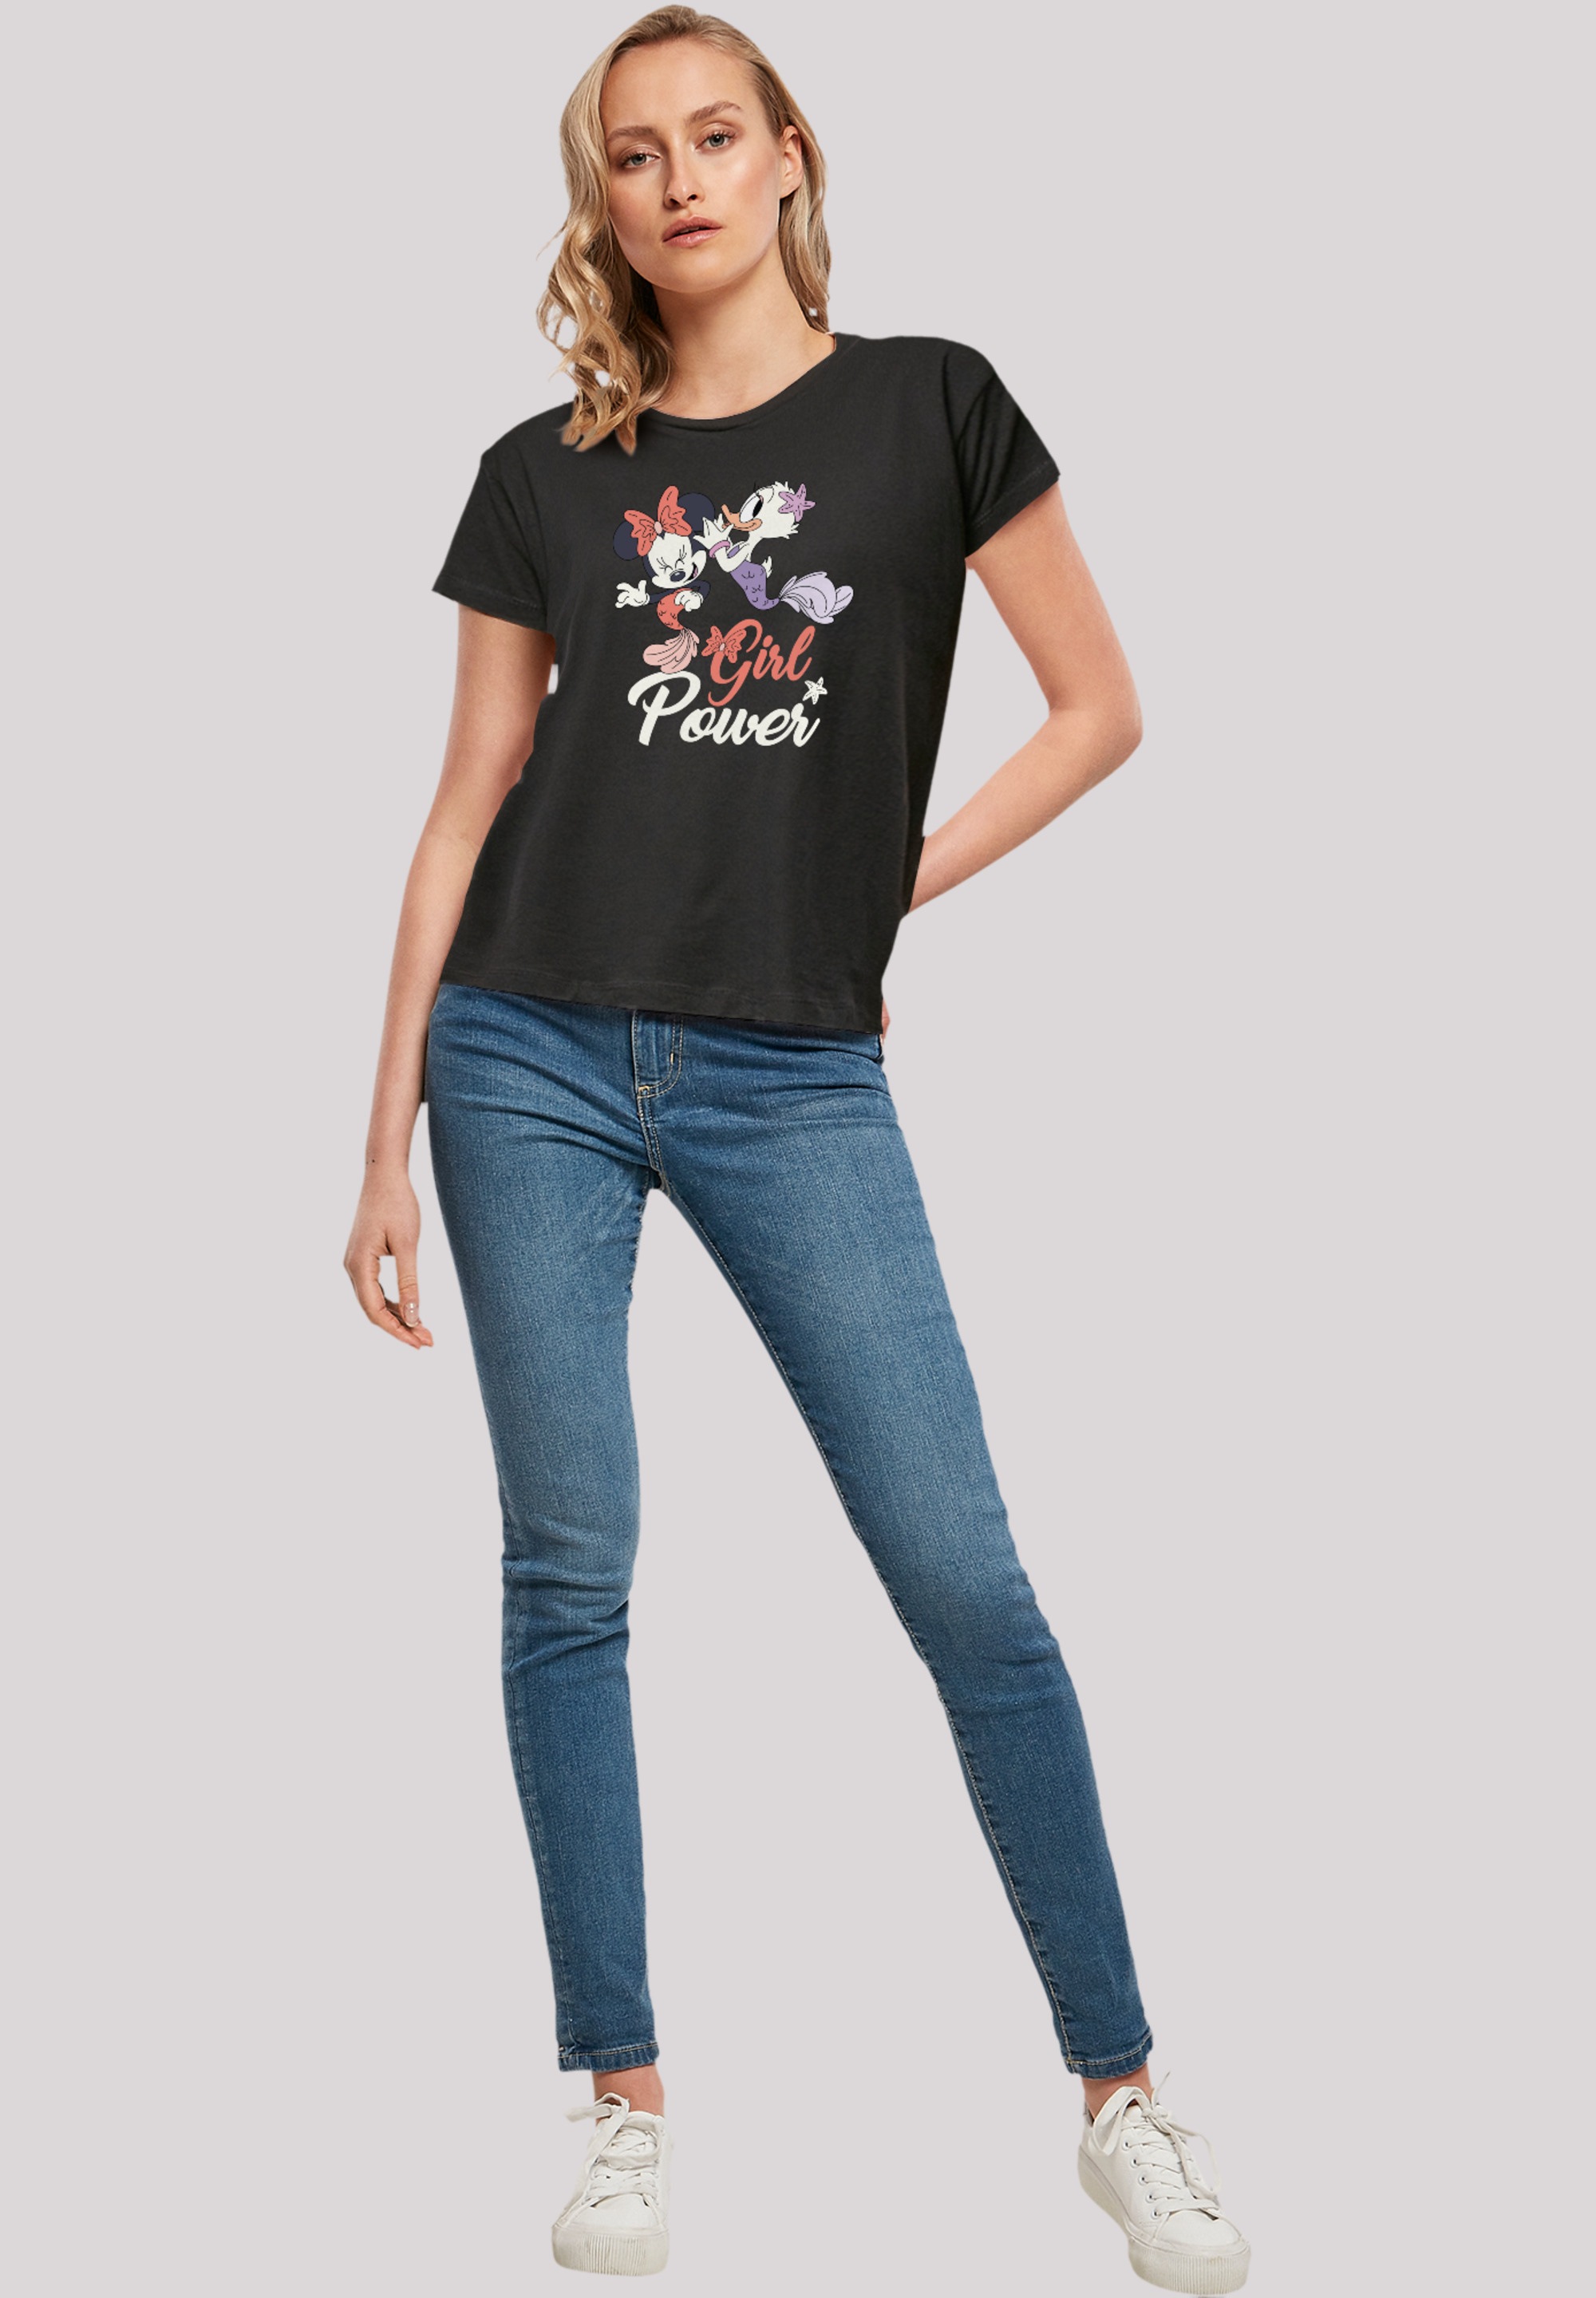 F4NT4STIC T-Shirt »Disney Minnie Maus & Daisy Girl Power«, Premium Qualität  online kaufen | I'm walking